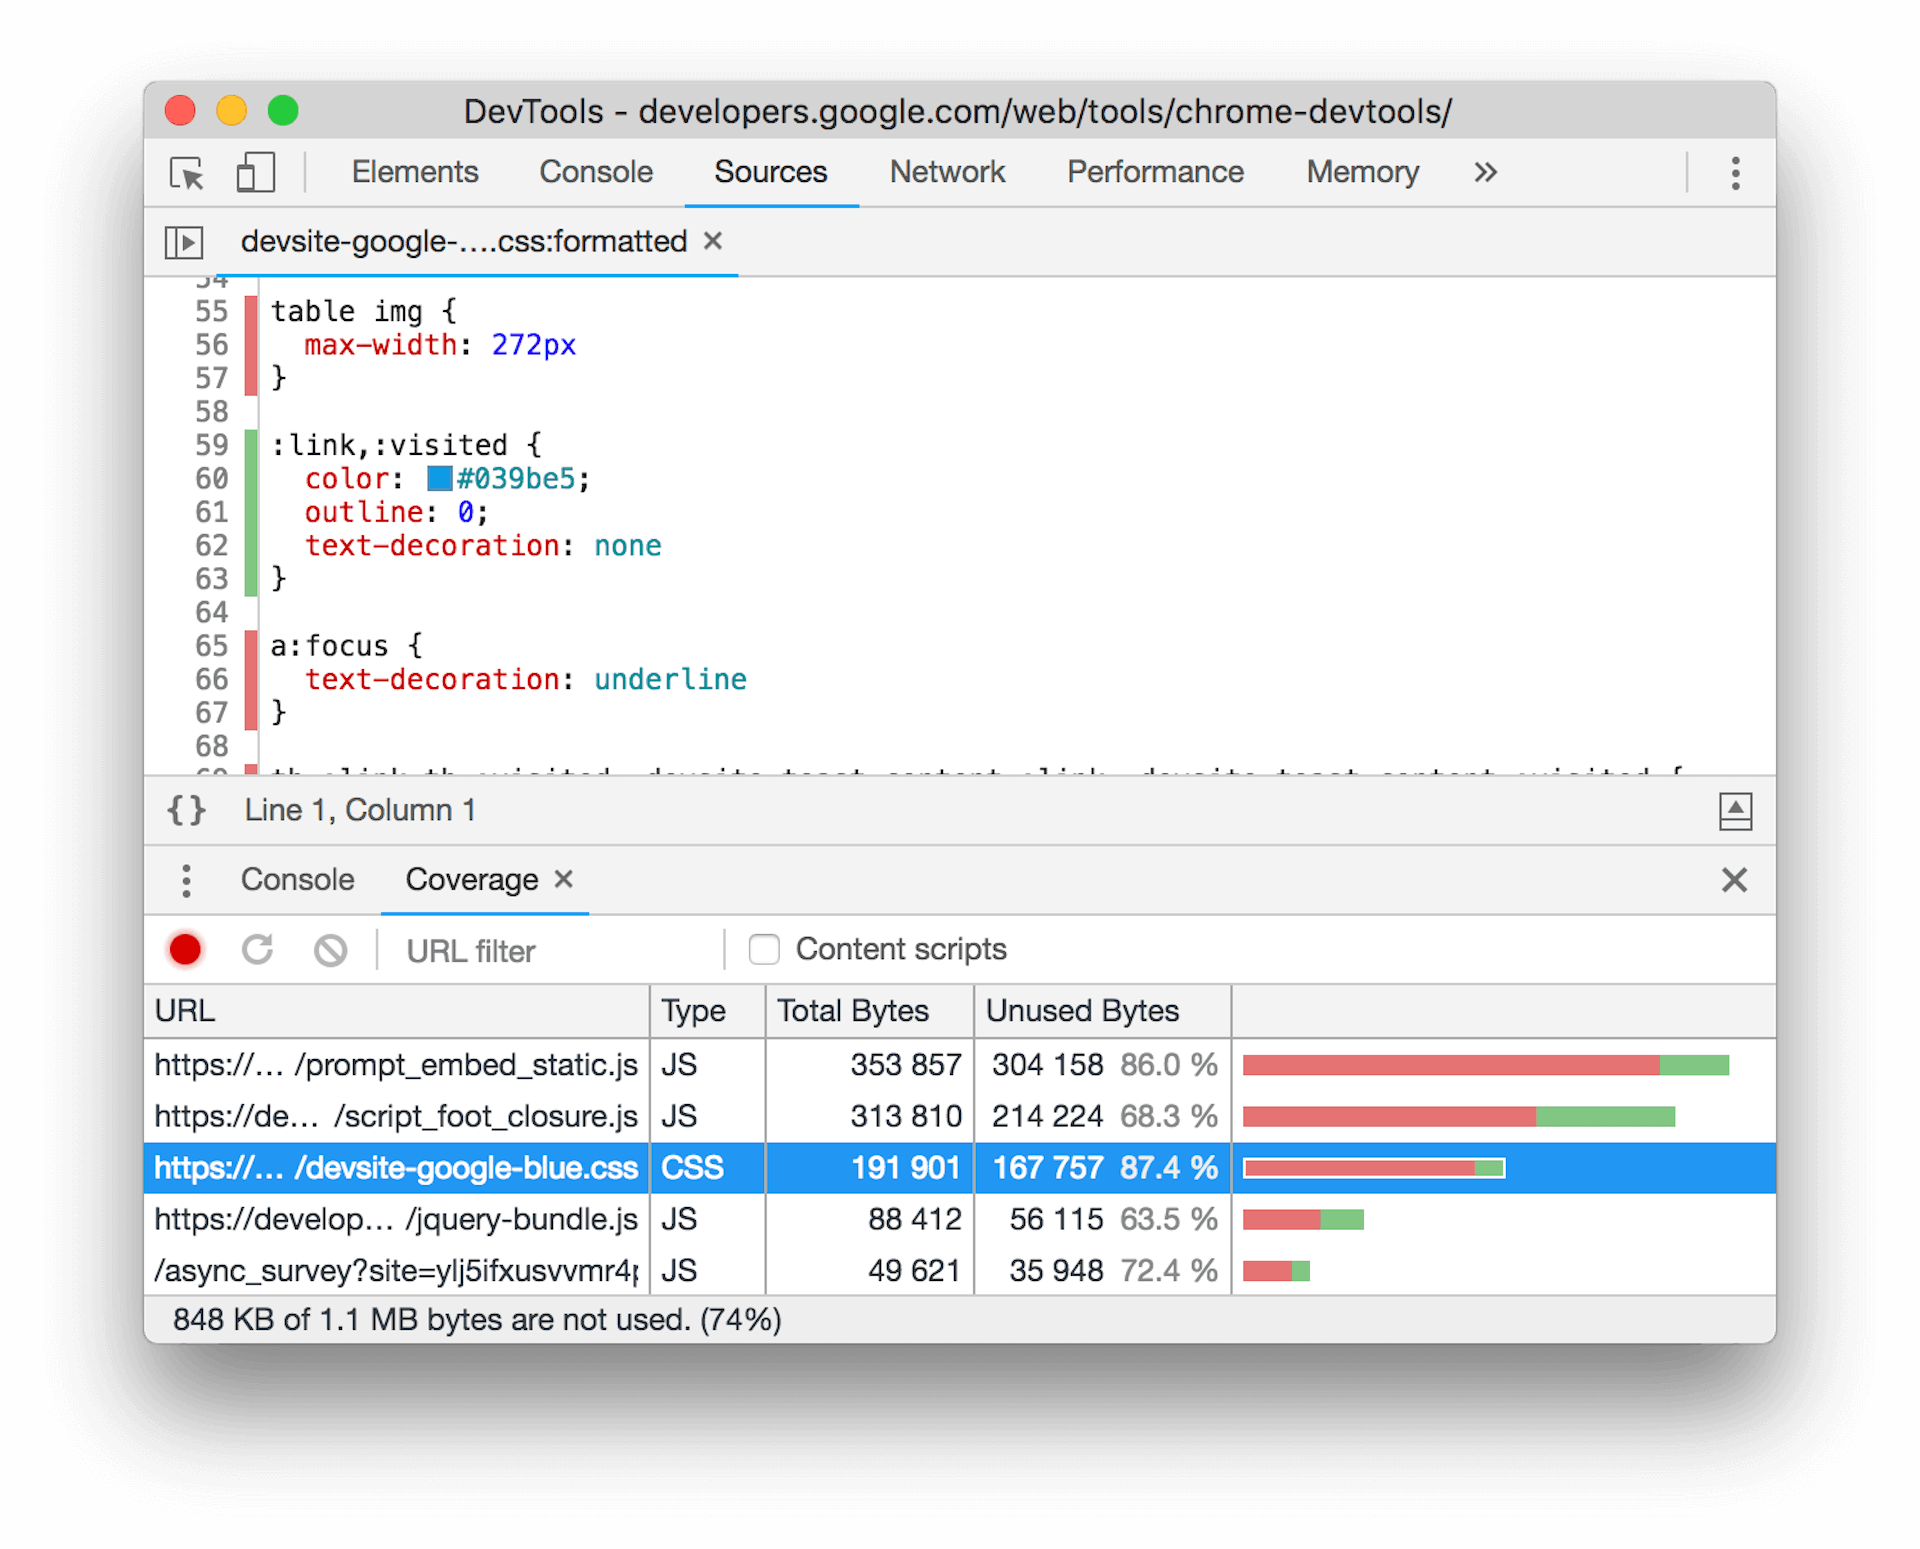 Ảnh chụp màn hình về công cụ đo lường mức độ phù hợp trong Công cụ của Chrome cho nhà phát triển. Một tệp CSS được chọn trong ngăn dưới cùng, hiển thị một lượng CSS đáng kể chưa được sử dụng trong bố cục trang hiện tại.